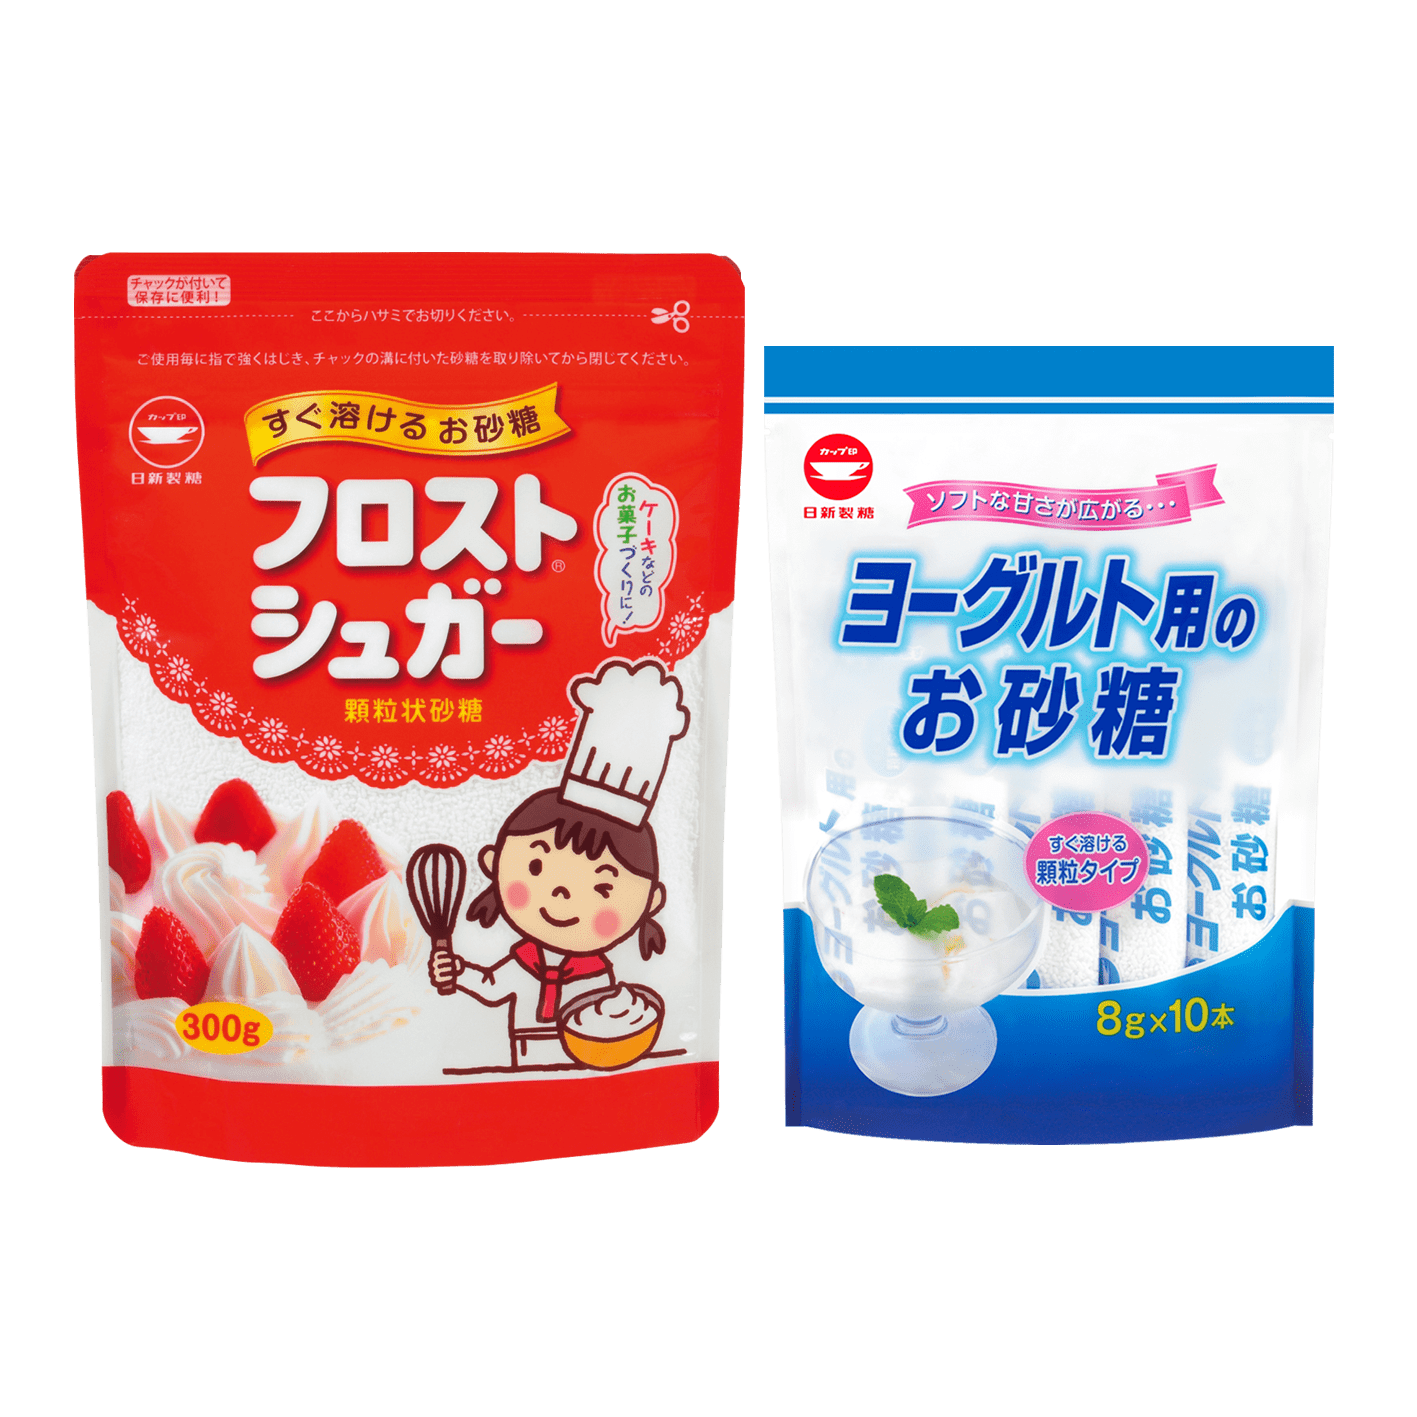 氷砂糖・果糖など｜商品情報｜カップ印のお砂糖 日新製糖株式会社